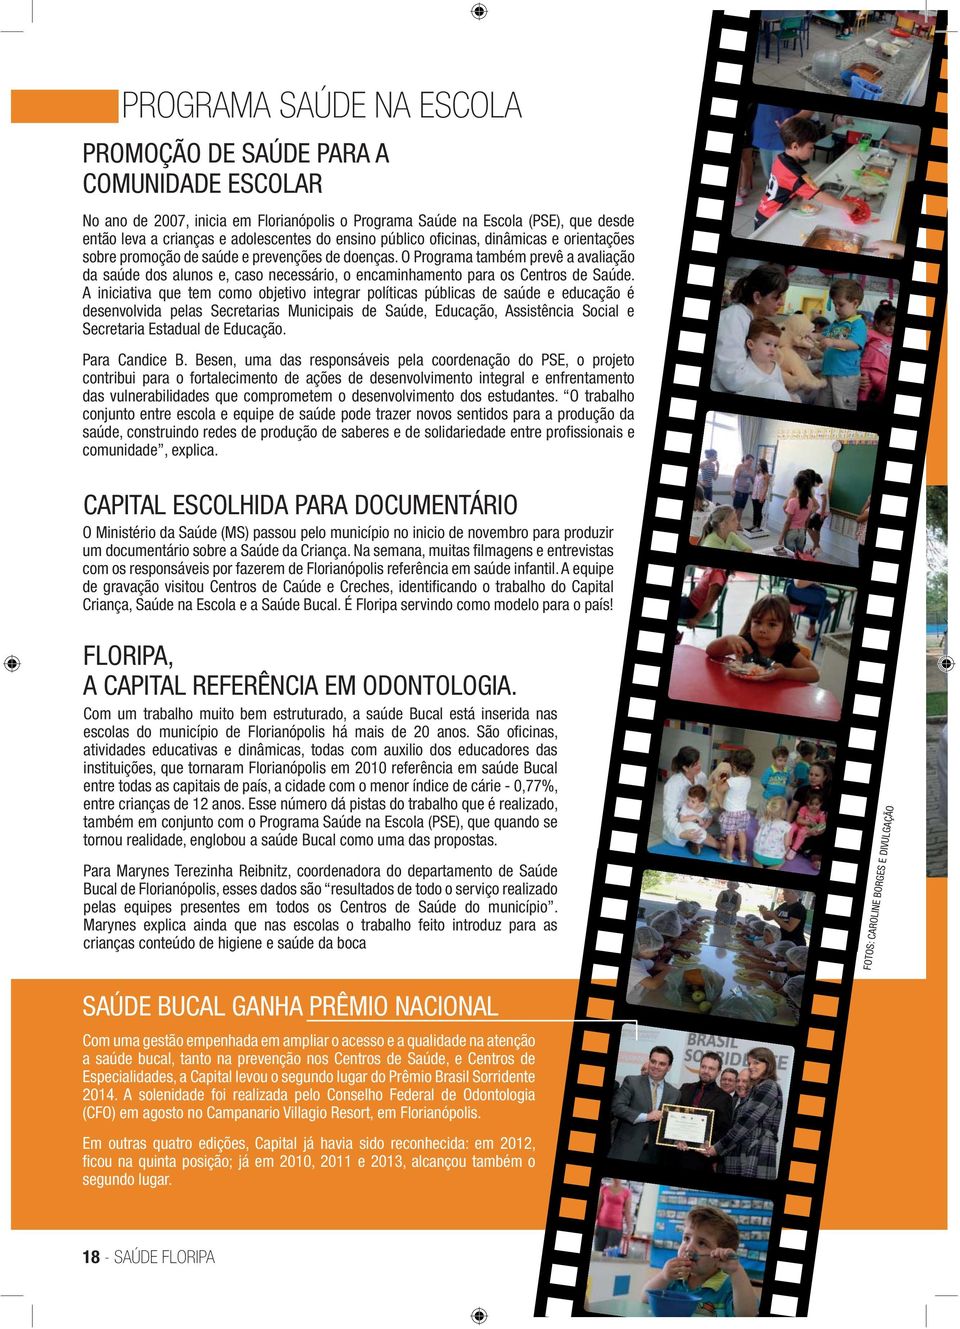 Florianópolis o Programa Saúde na Escola (PSE), que desde então leva a crianças e adolescentes do ensino público ofi cinas, dinâmicas e orientações sobre promoção de saúde e prevenções de doenças.